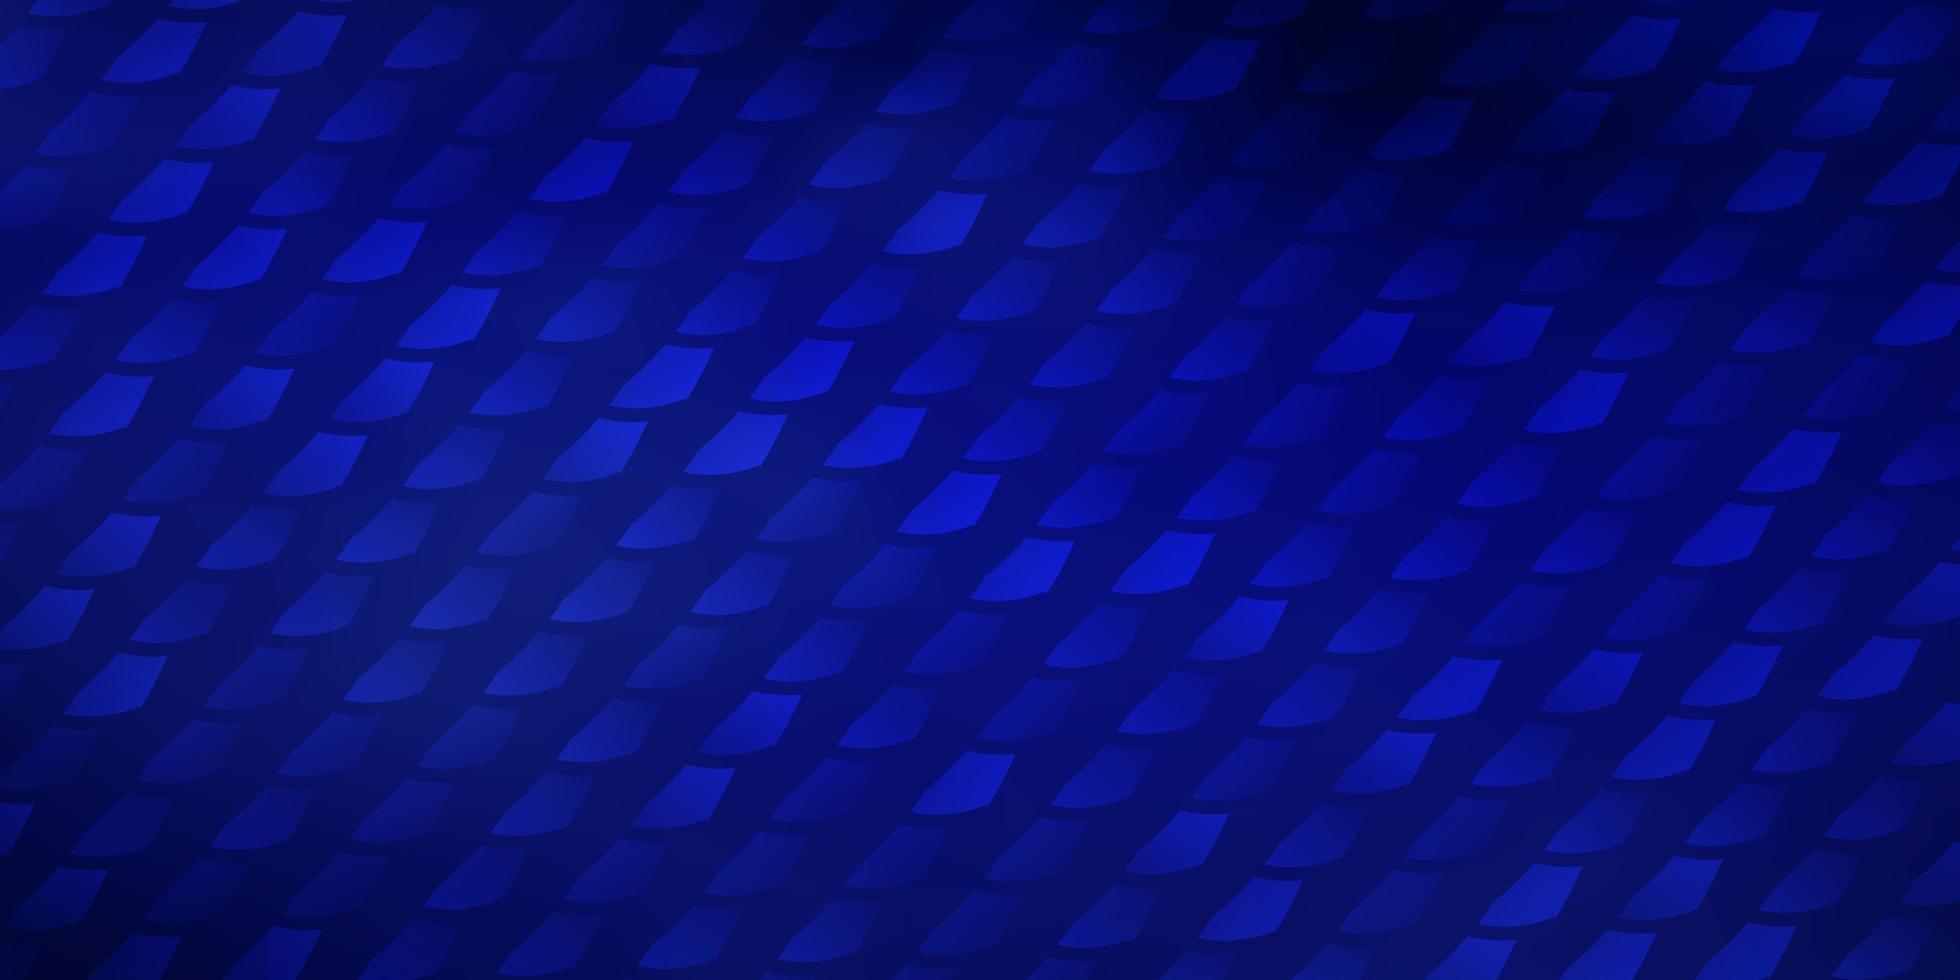 texture de vecteur bleu foncé dans un style rectangulaire.